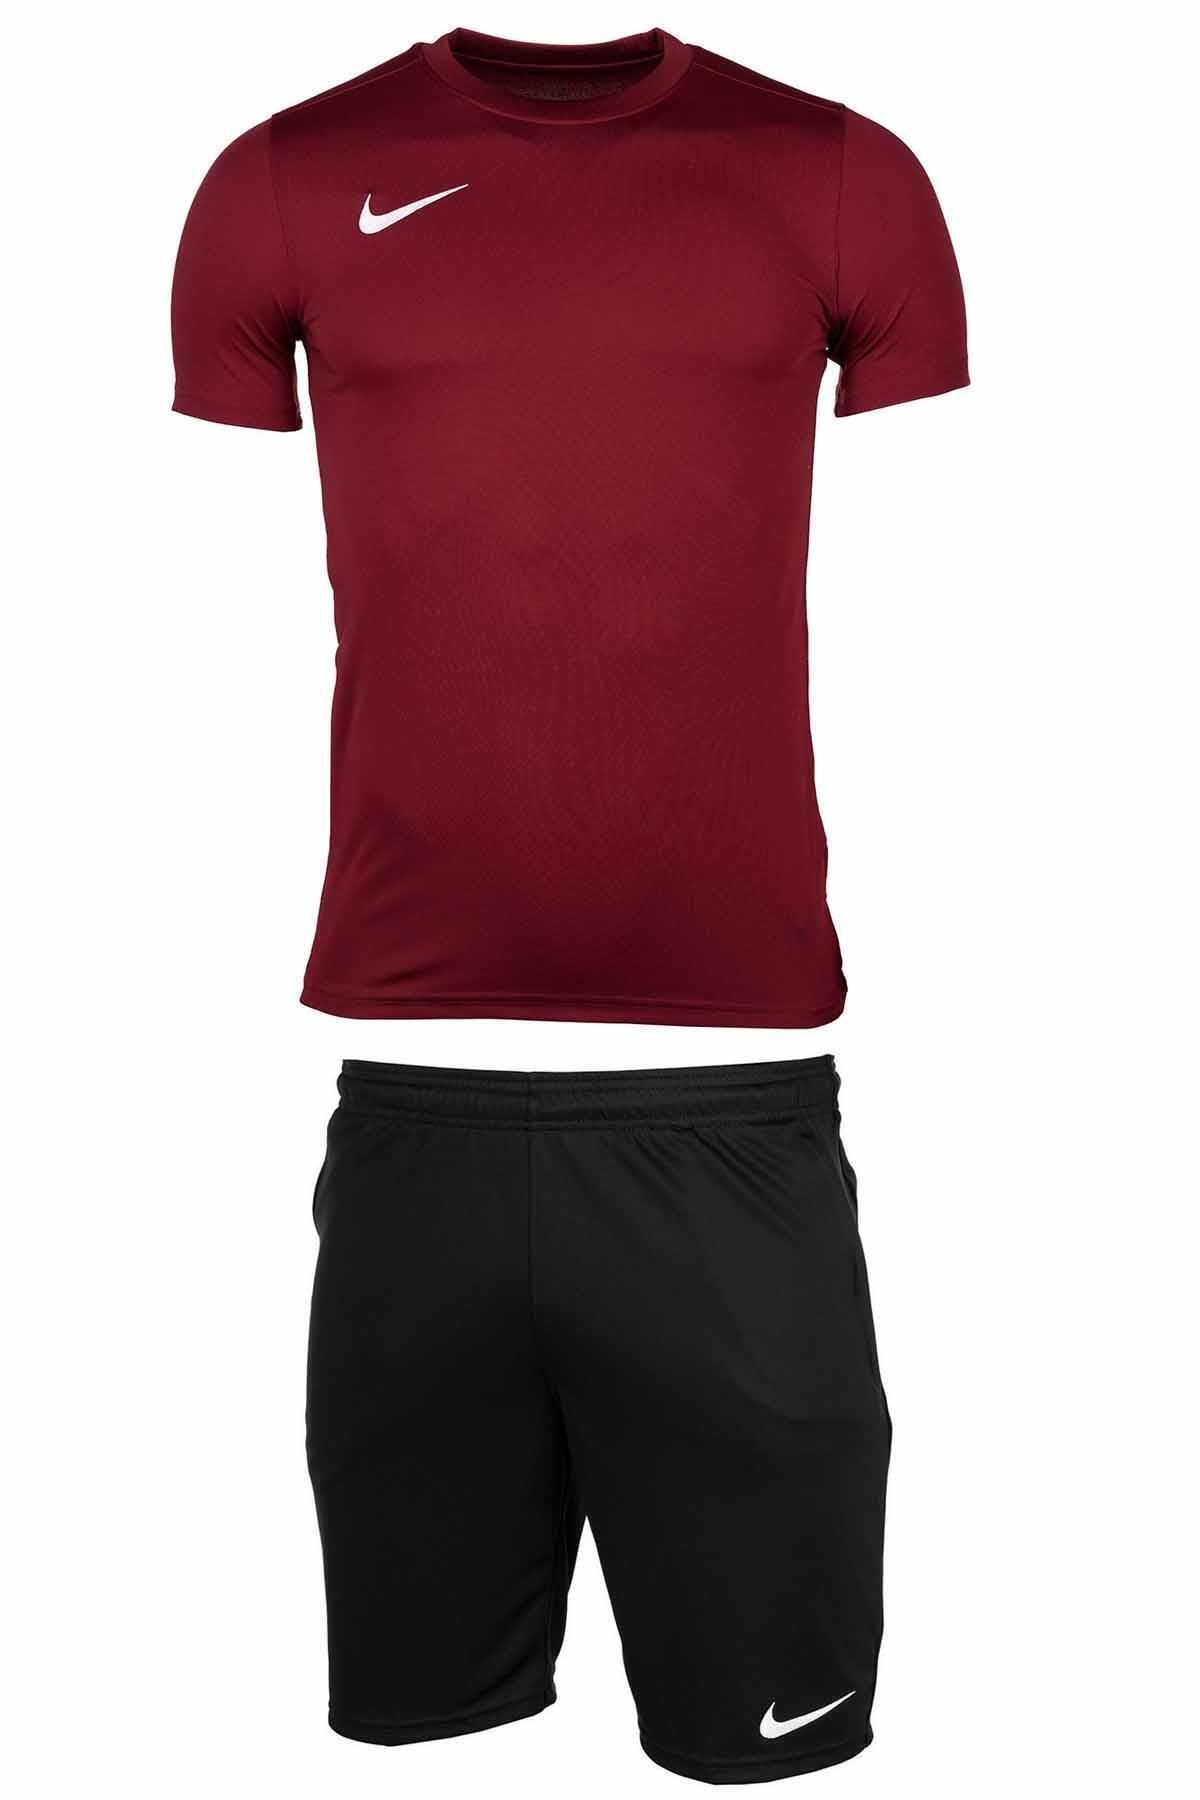 Nike Erkek Şort-tişört Takım Erkek Şort Nk5261-677-bordo